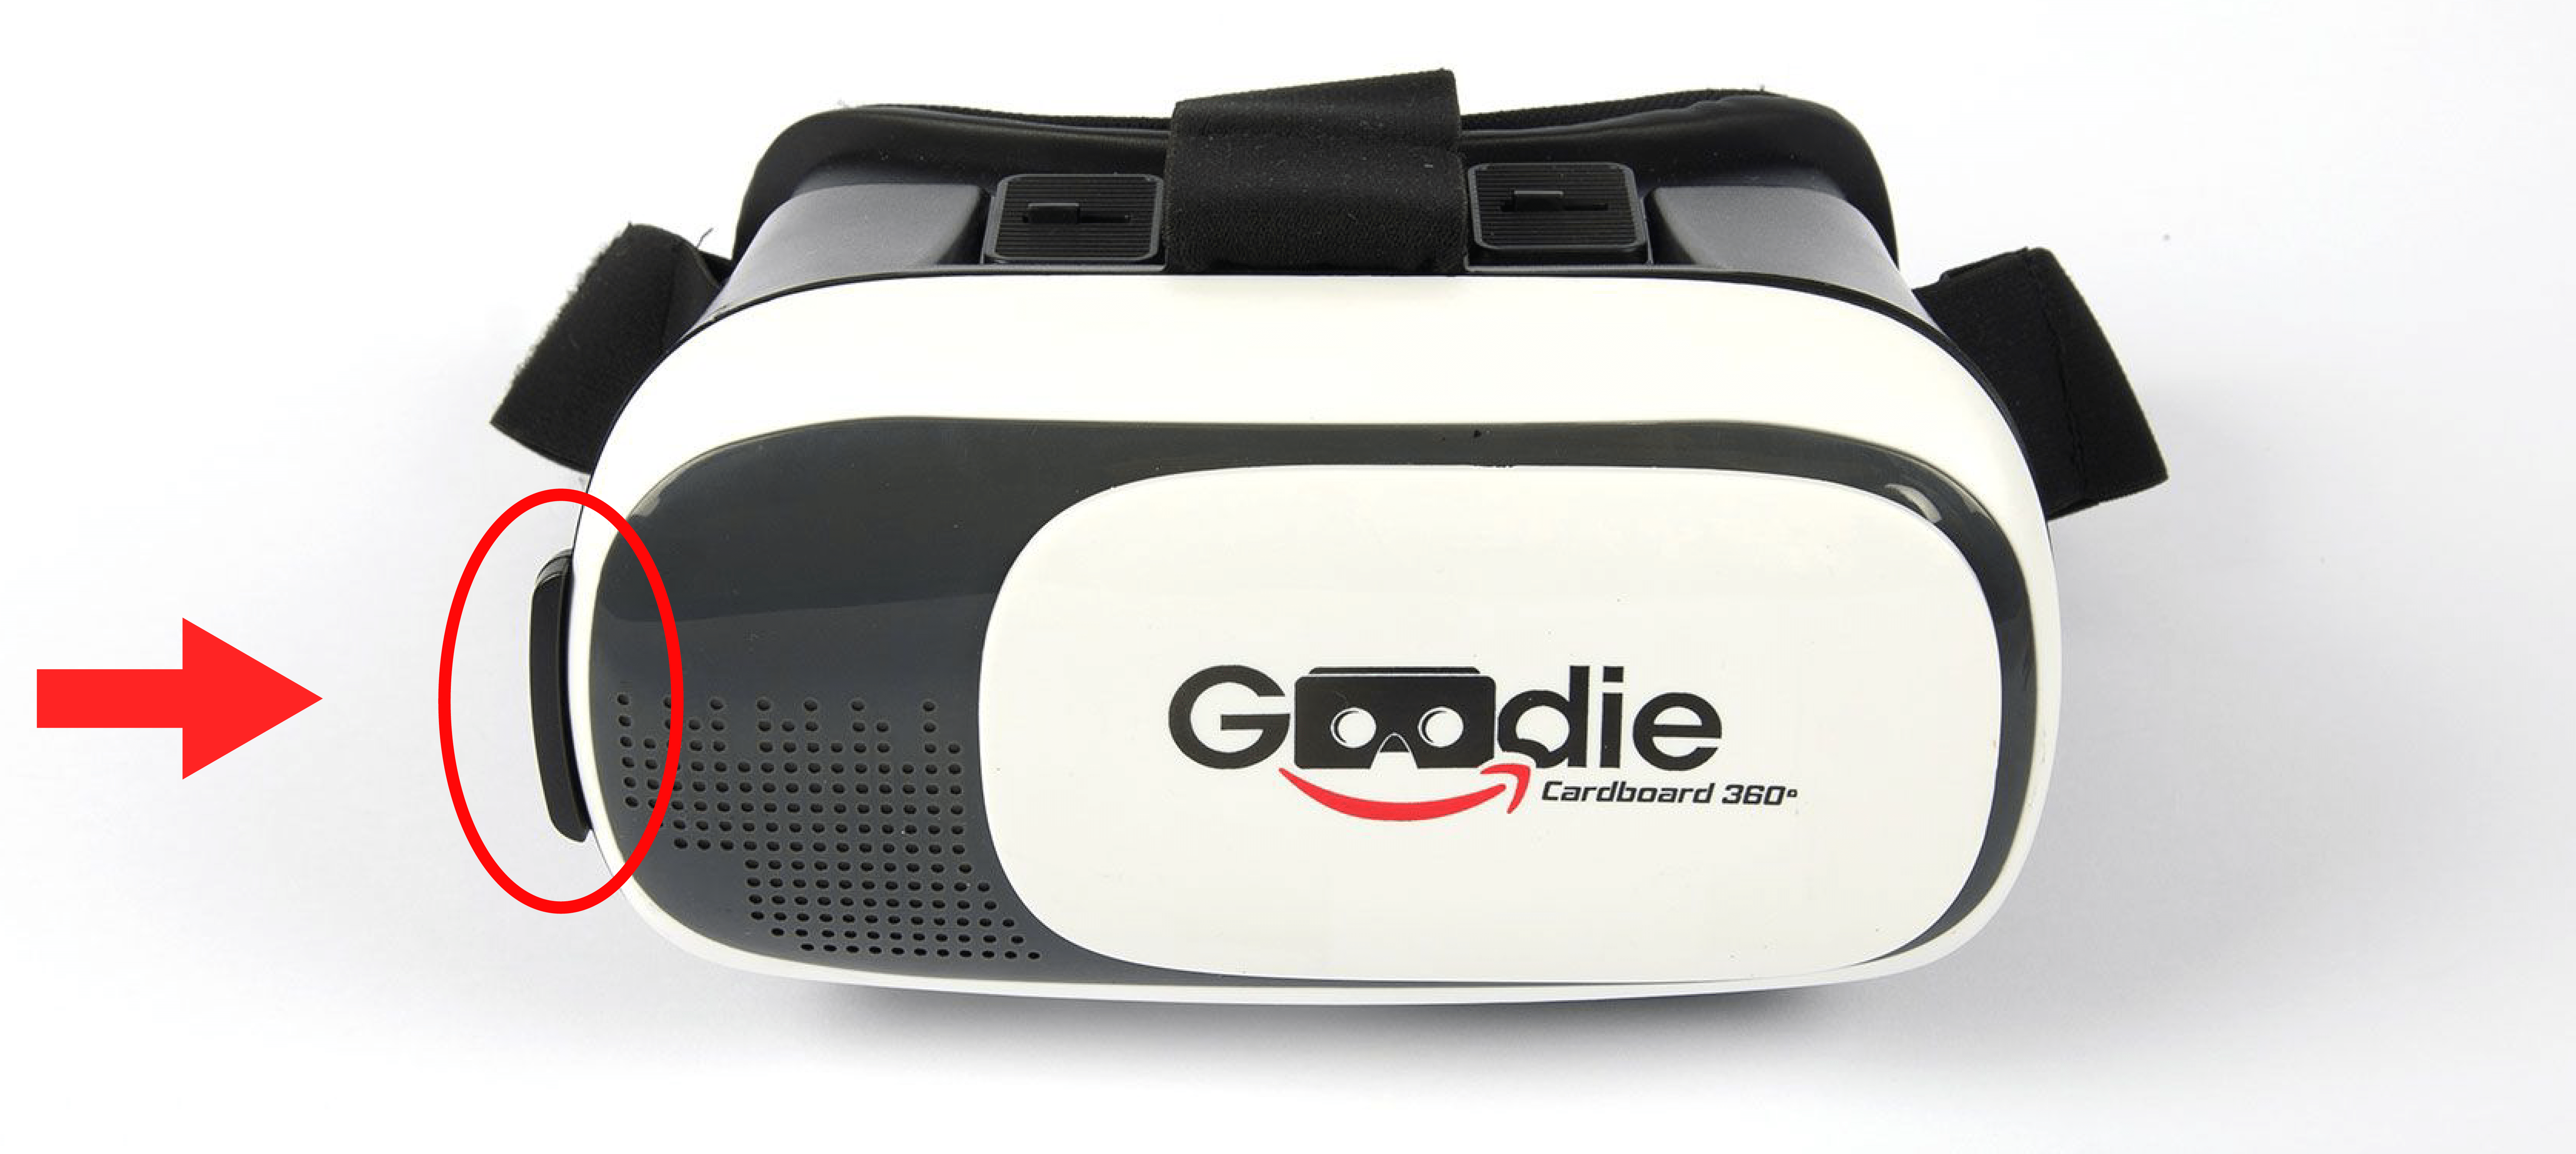 Gafas de realidad virtual - GAFASVR KLACK, Telefonos y smartphone